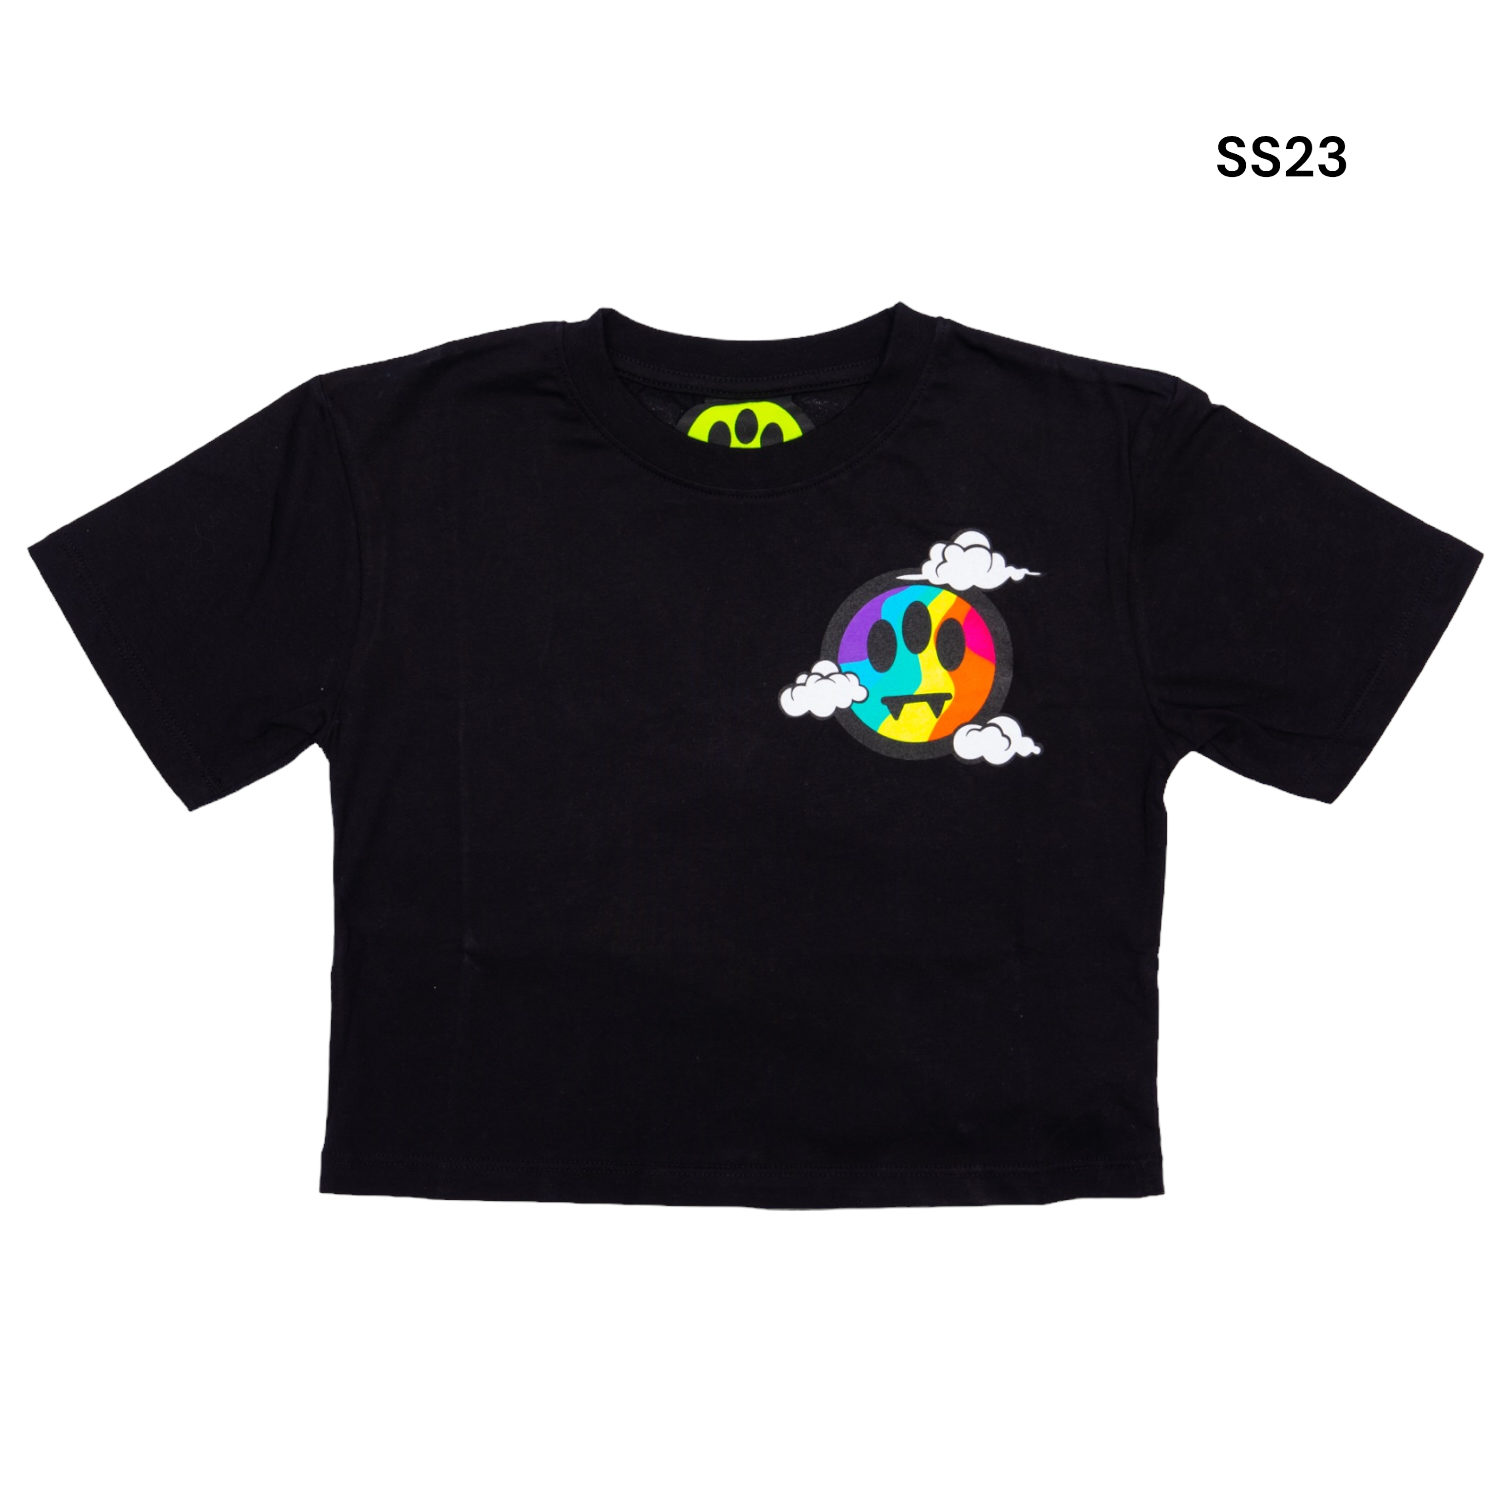 T-shirt cropped nera per bambina